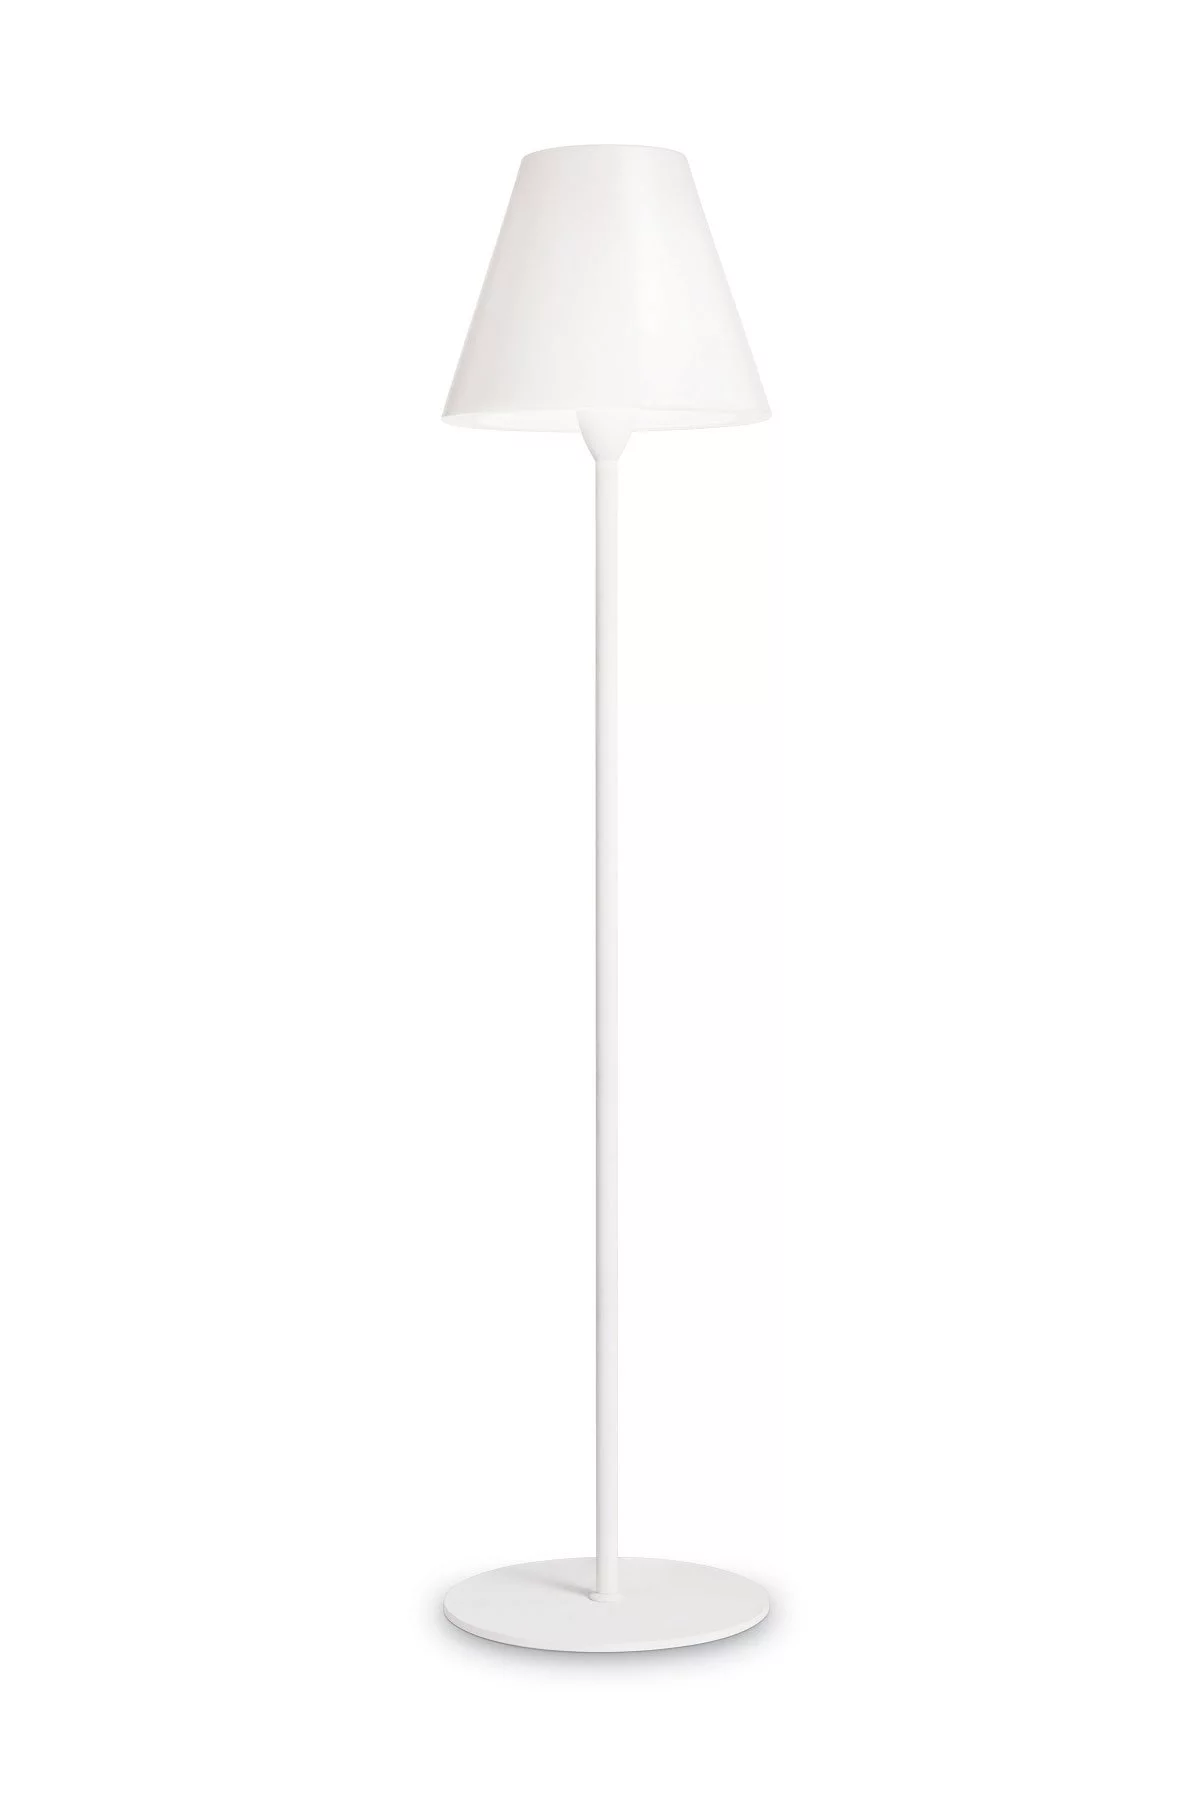   
                        Світильник вуличний IDEAL LUX (Італія) 13106    
                         у стилі модерн.  
                        Тип джерела світла: cвітлодіодні led, енергозберігаючі, розжарювання.                                                 Кольори плафонів і підвісок: білий.                         Матеріал: пластик.                          фото 1